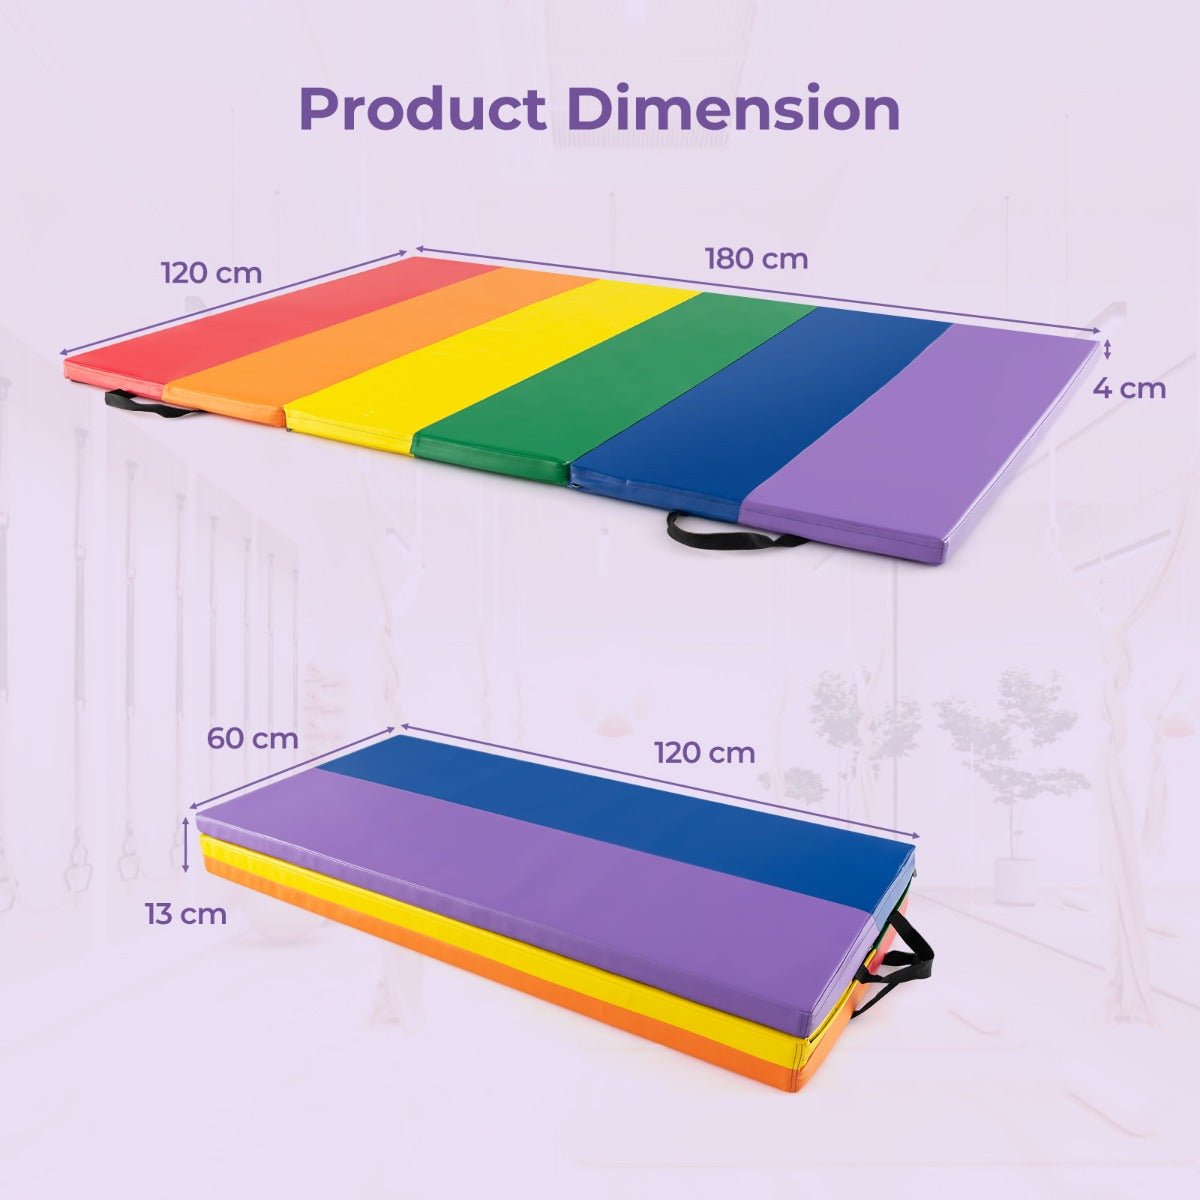 Multi Colour Foldable Gymnastics Mat - Kids Mega Mart